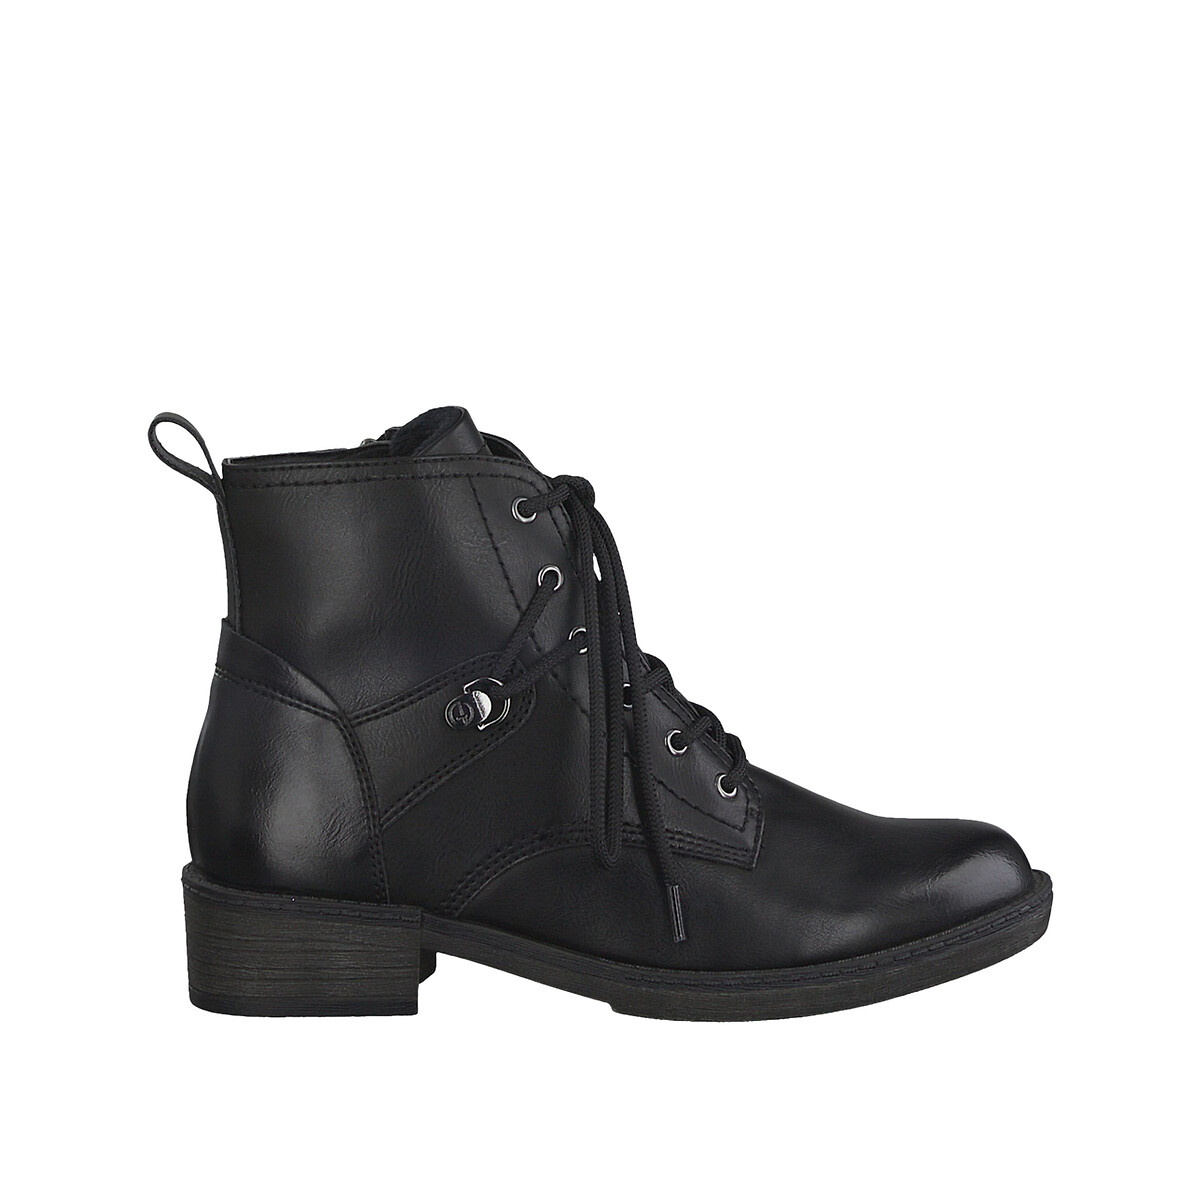 Ananiver konstant Legitim Lace-up flat ankle boots black Tamaris | La Redoute